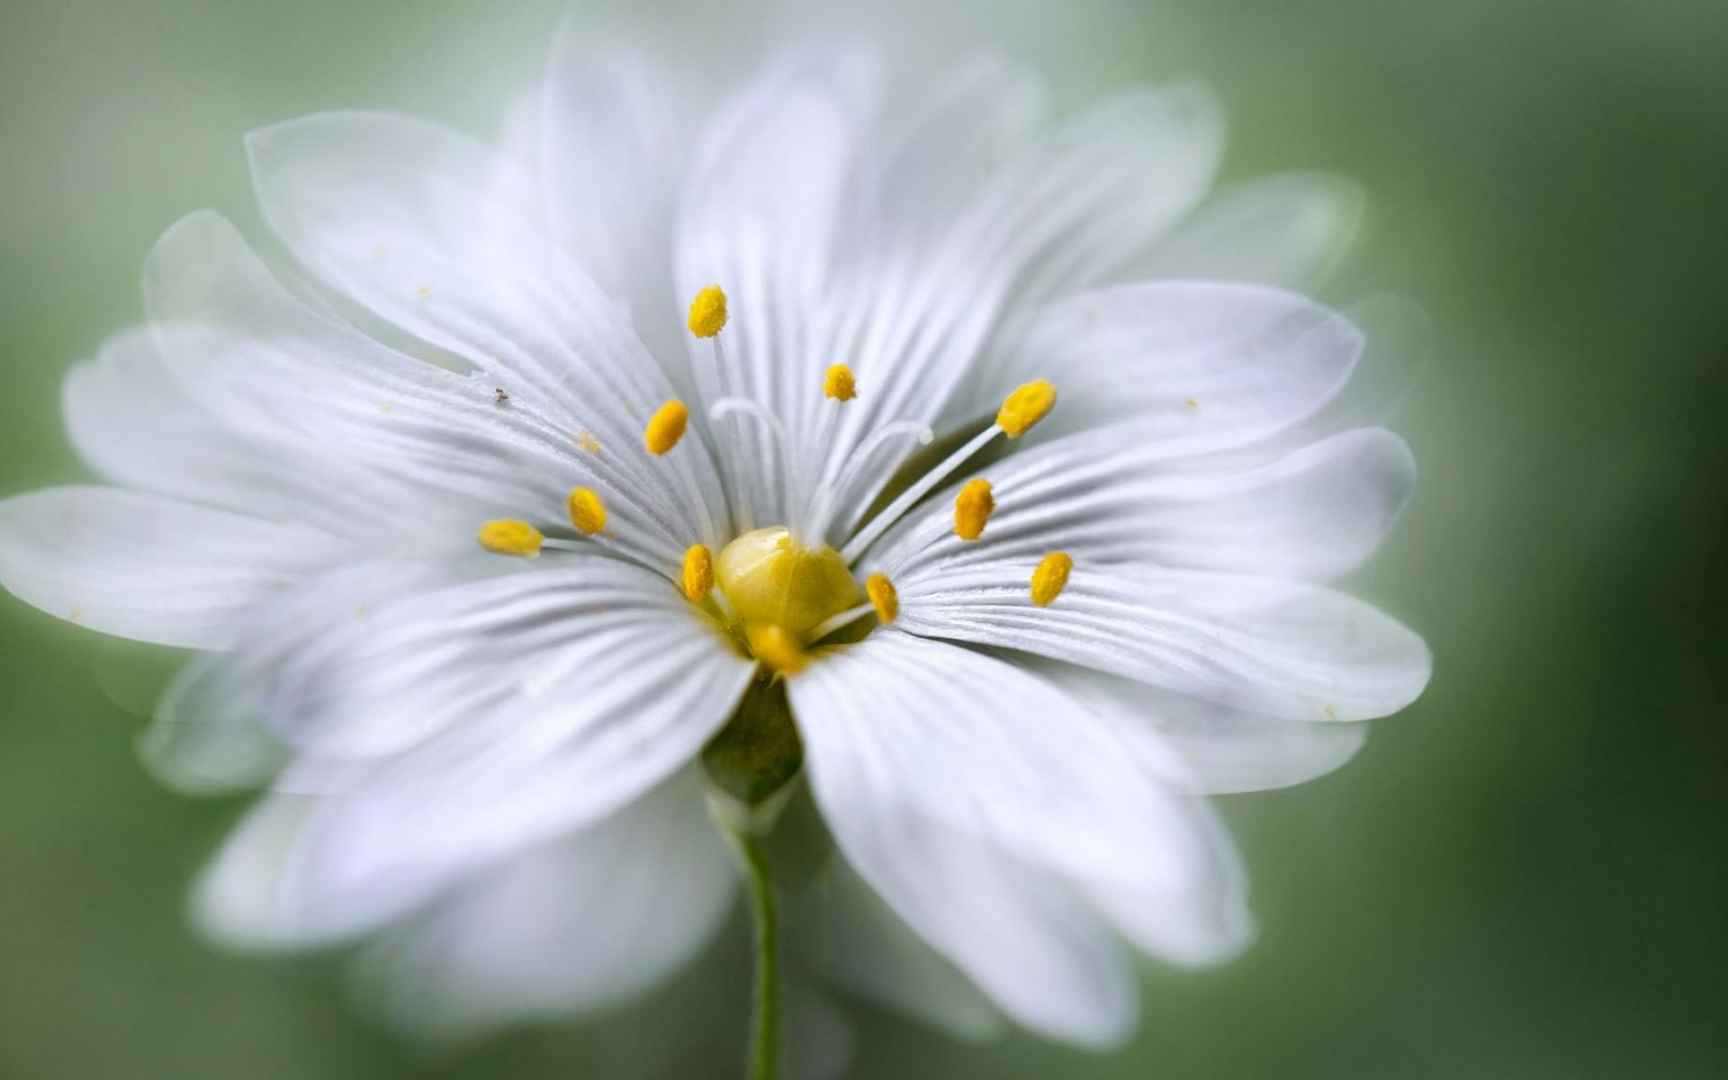 唯美朦胧微距摄影绝美的小清新花朵图片-